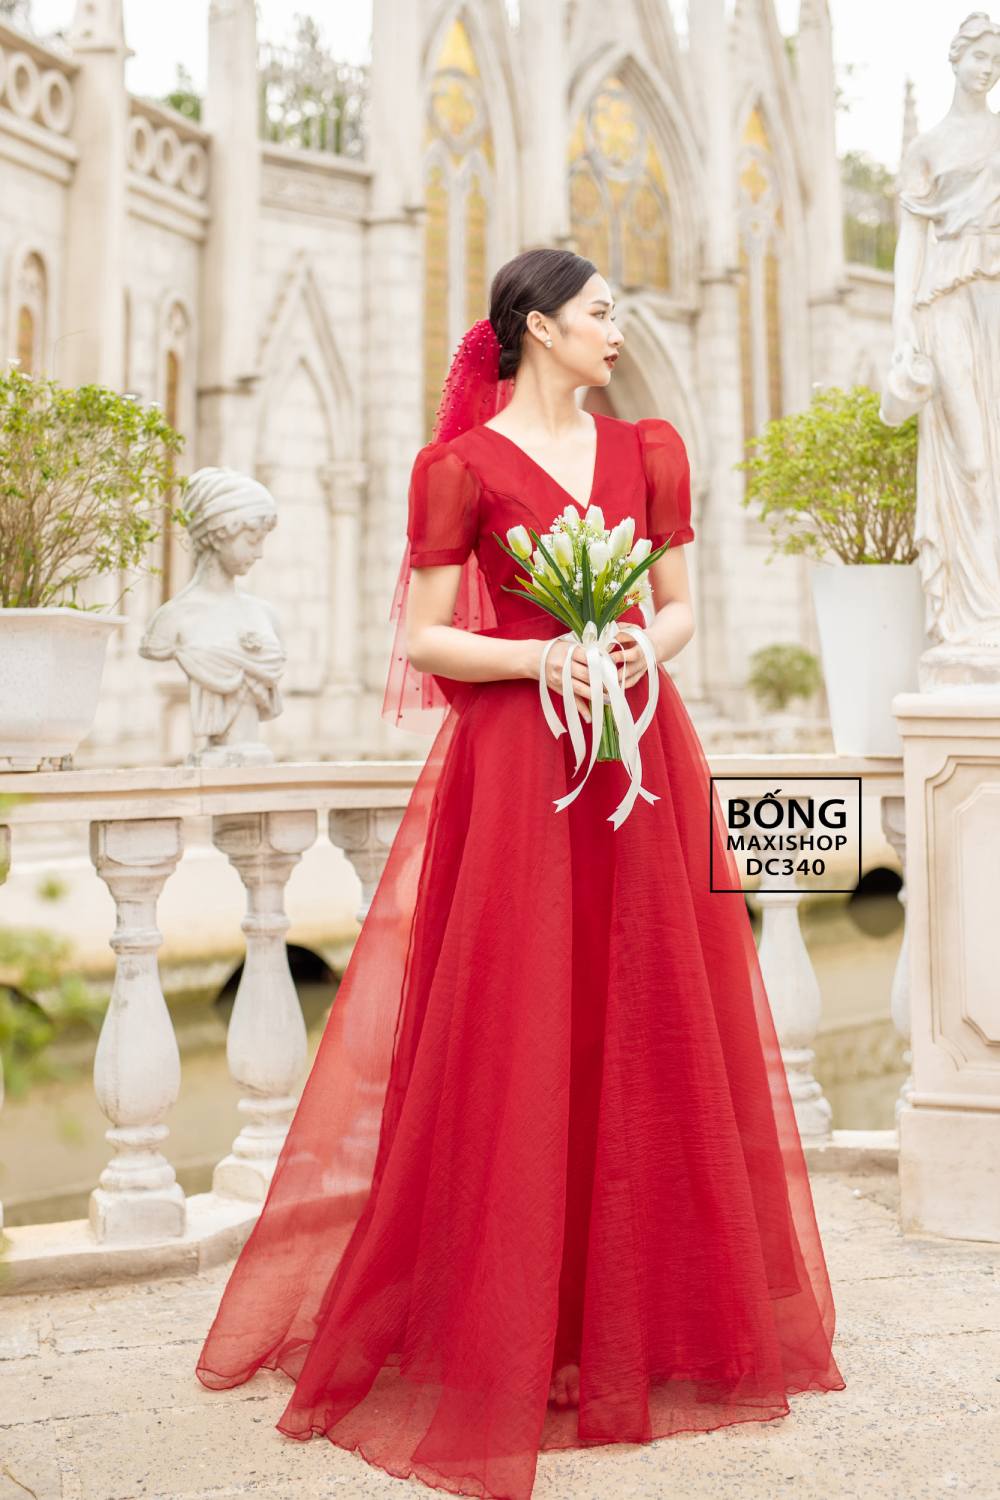 Những kiểu váy cưới đẹp và lạ được các ngôi sao lựa chọn trên thảm đỏ